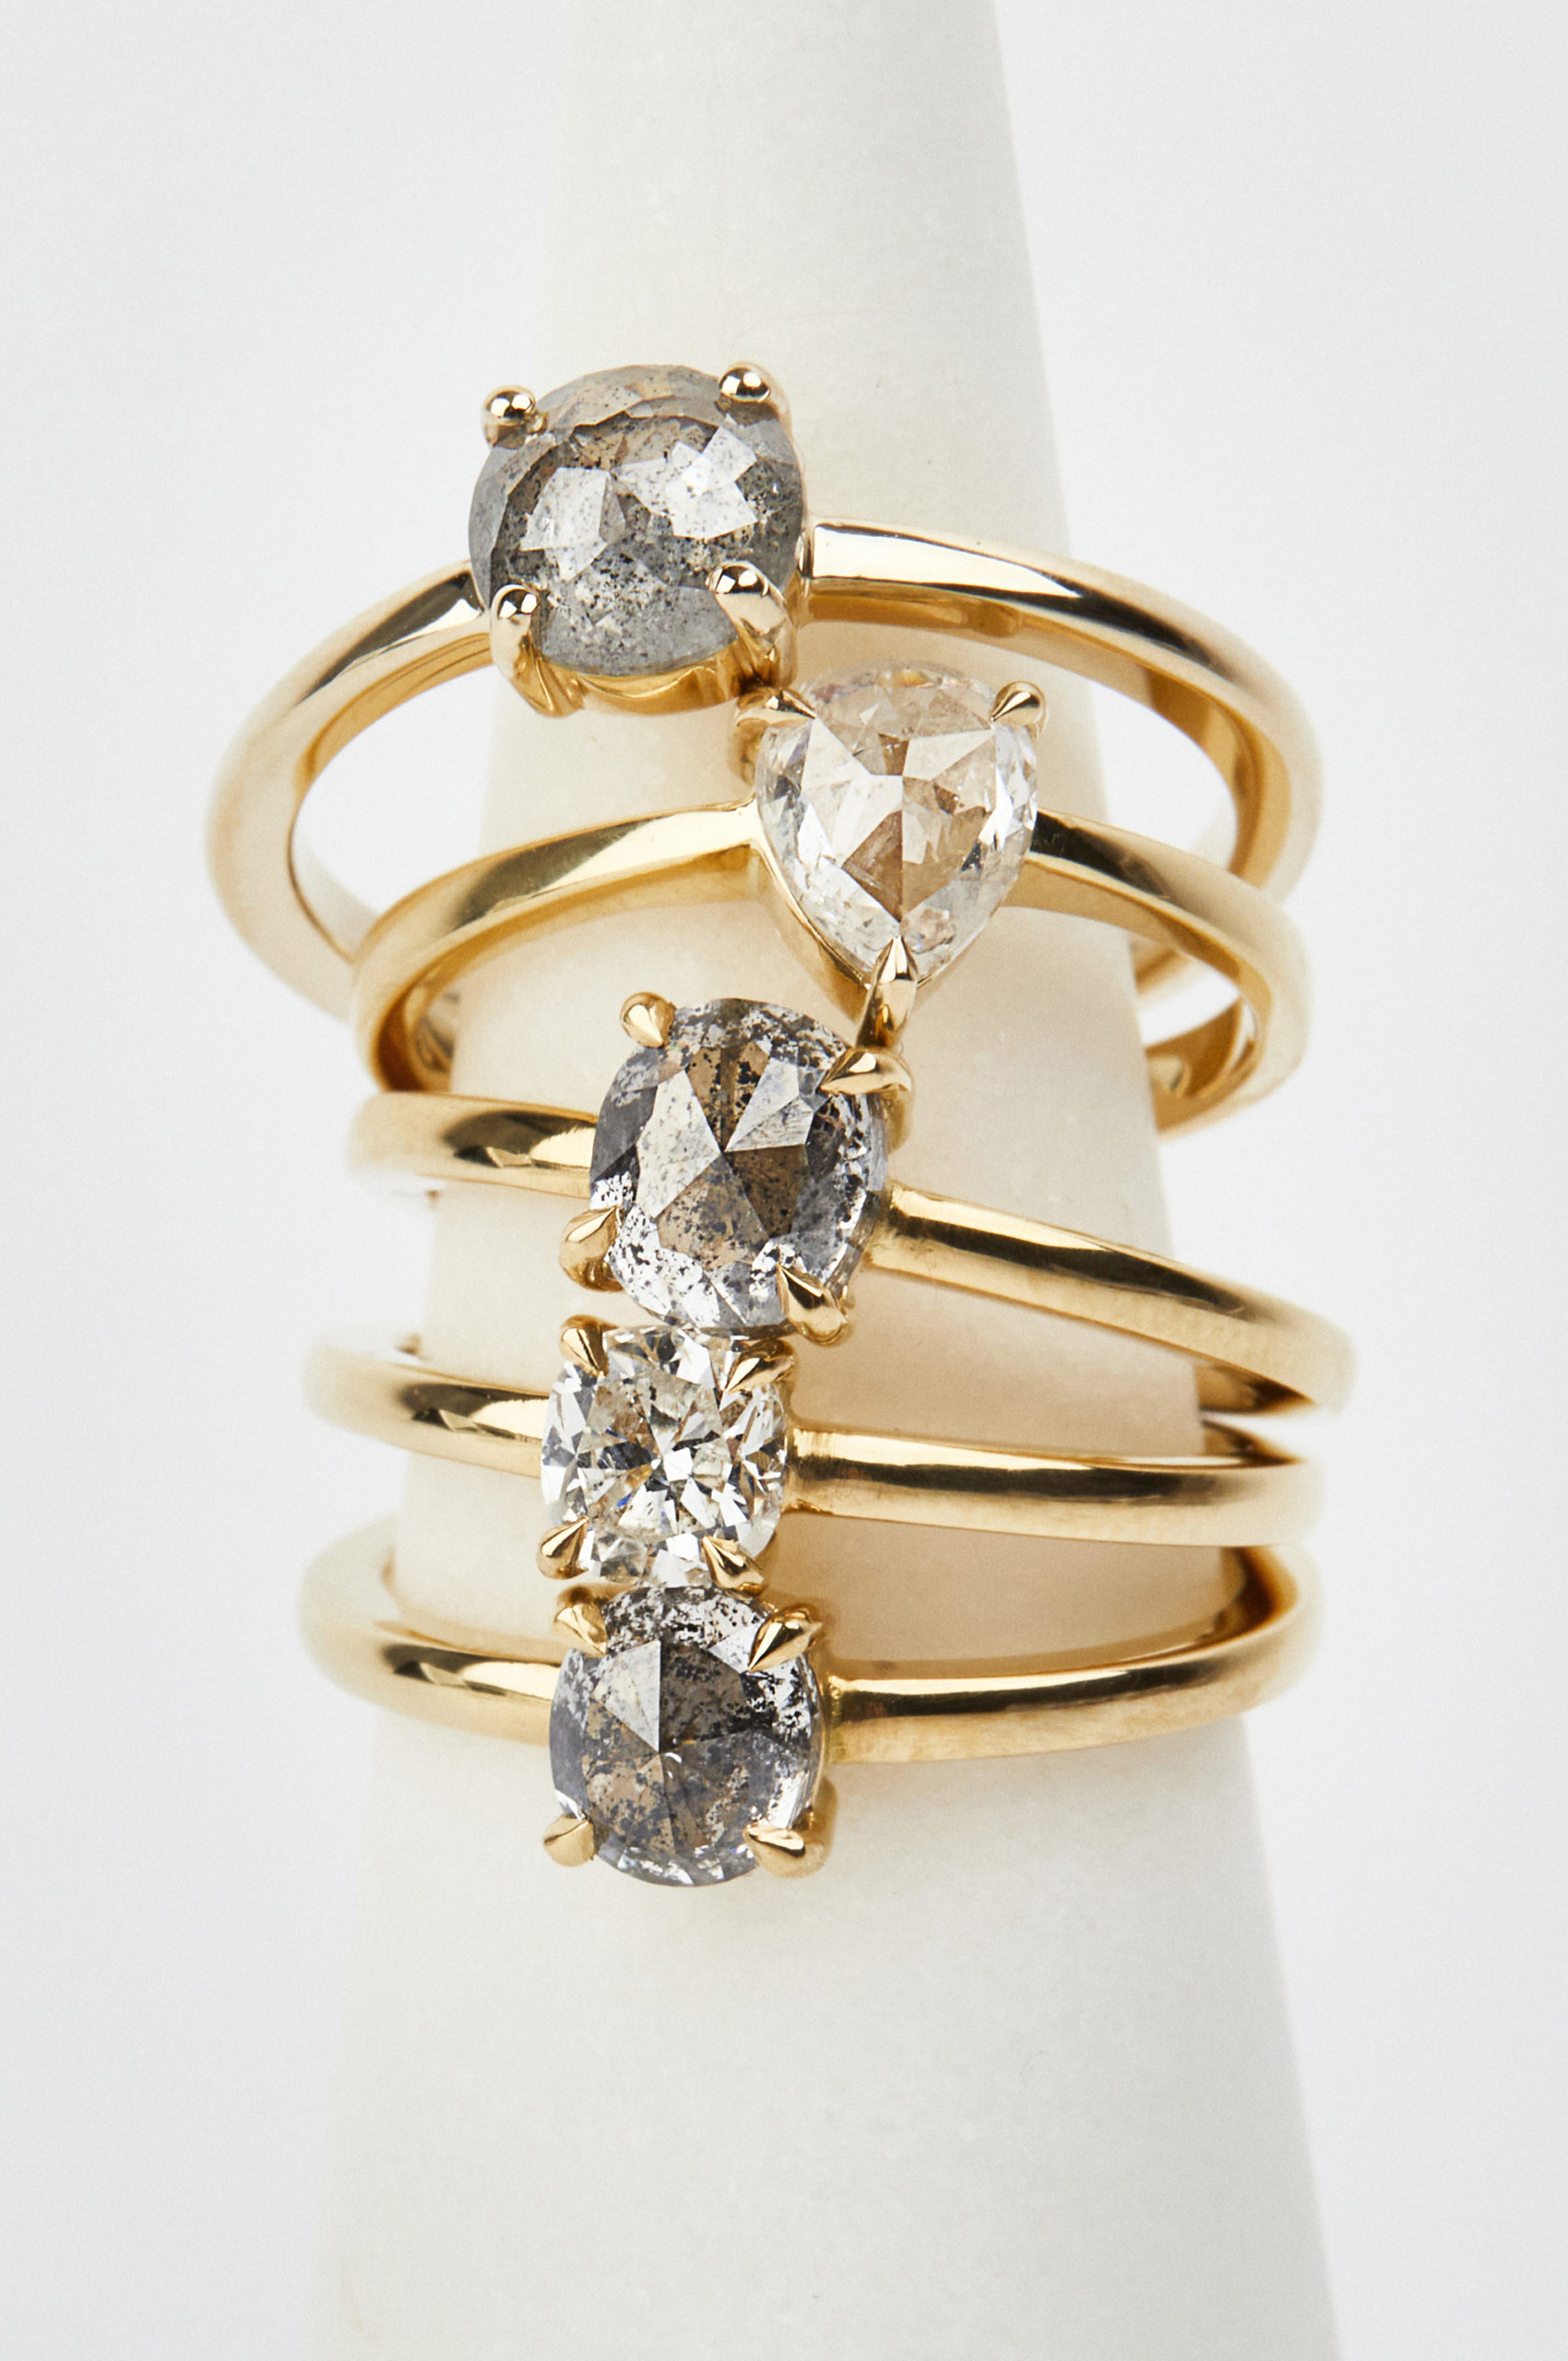 Sophia Perez Jewellery Engagement Rings 